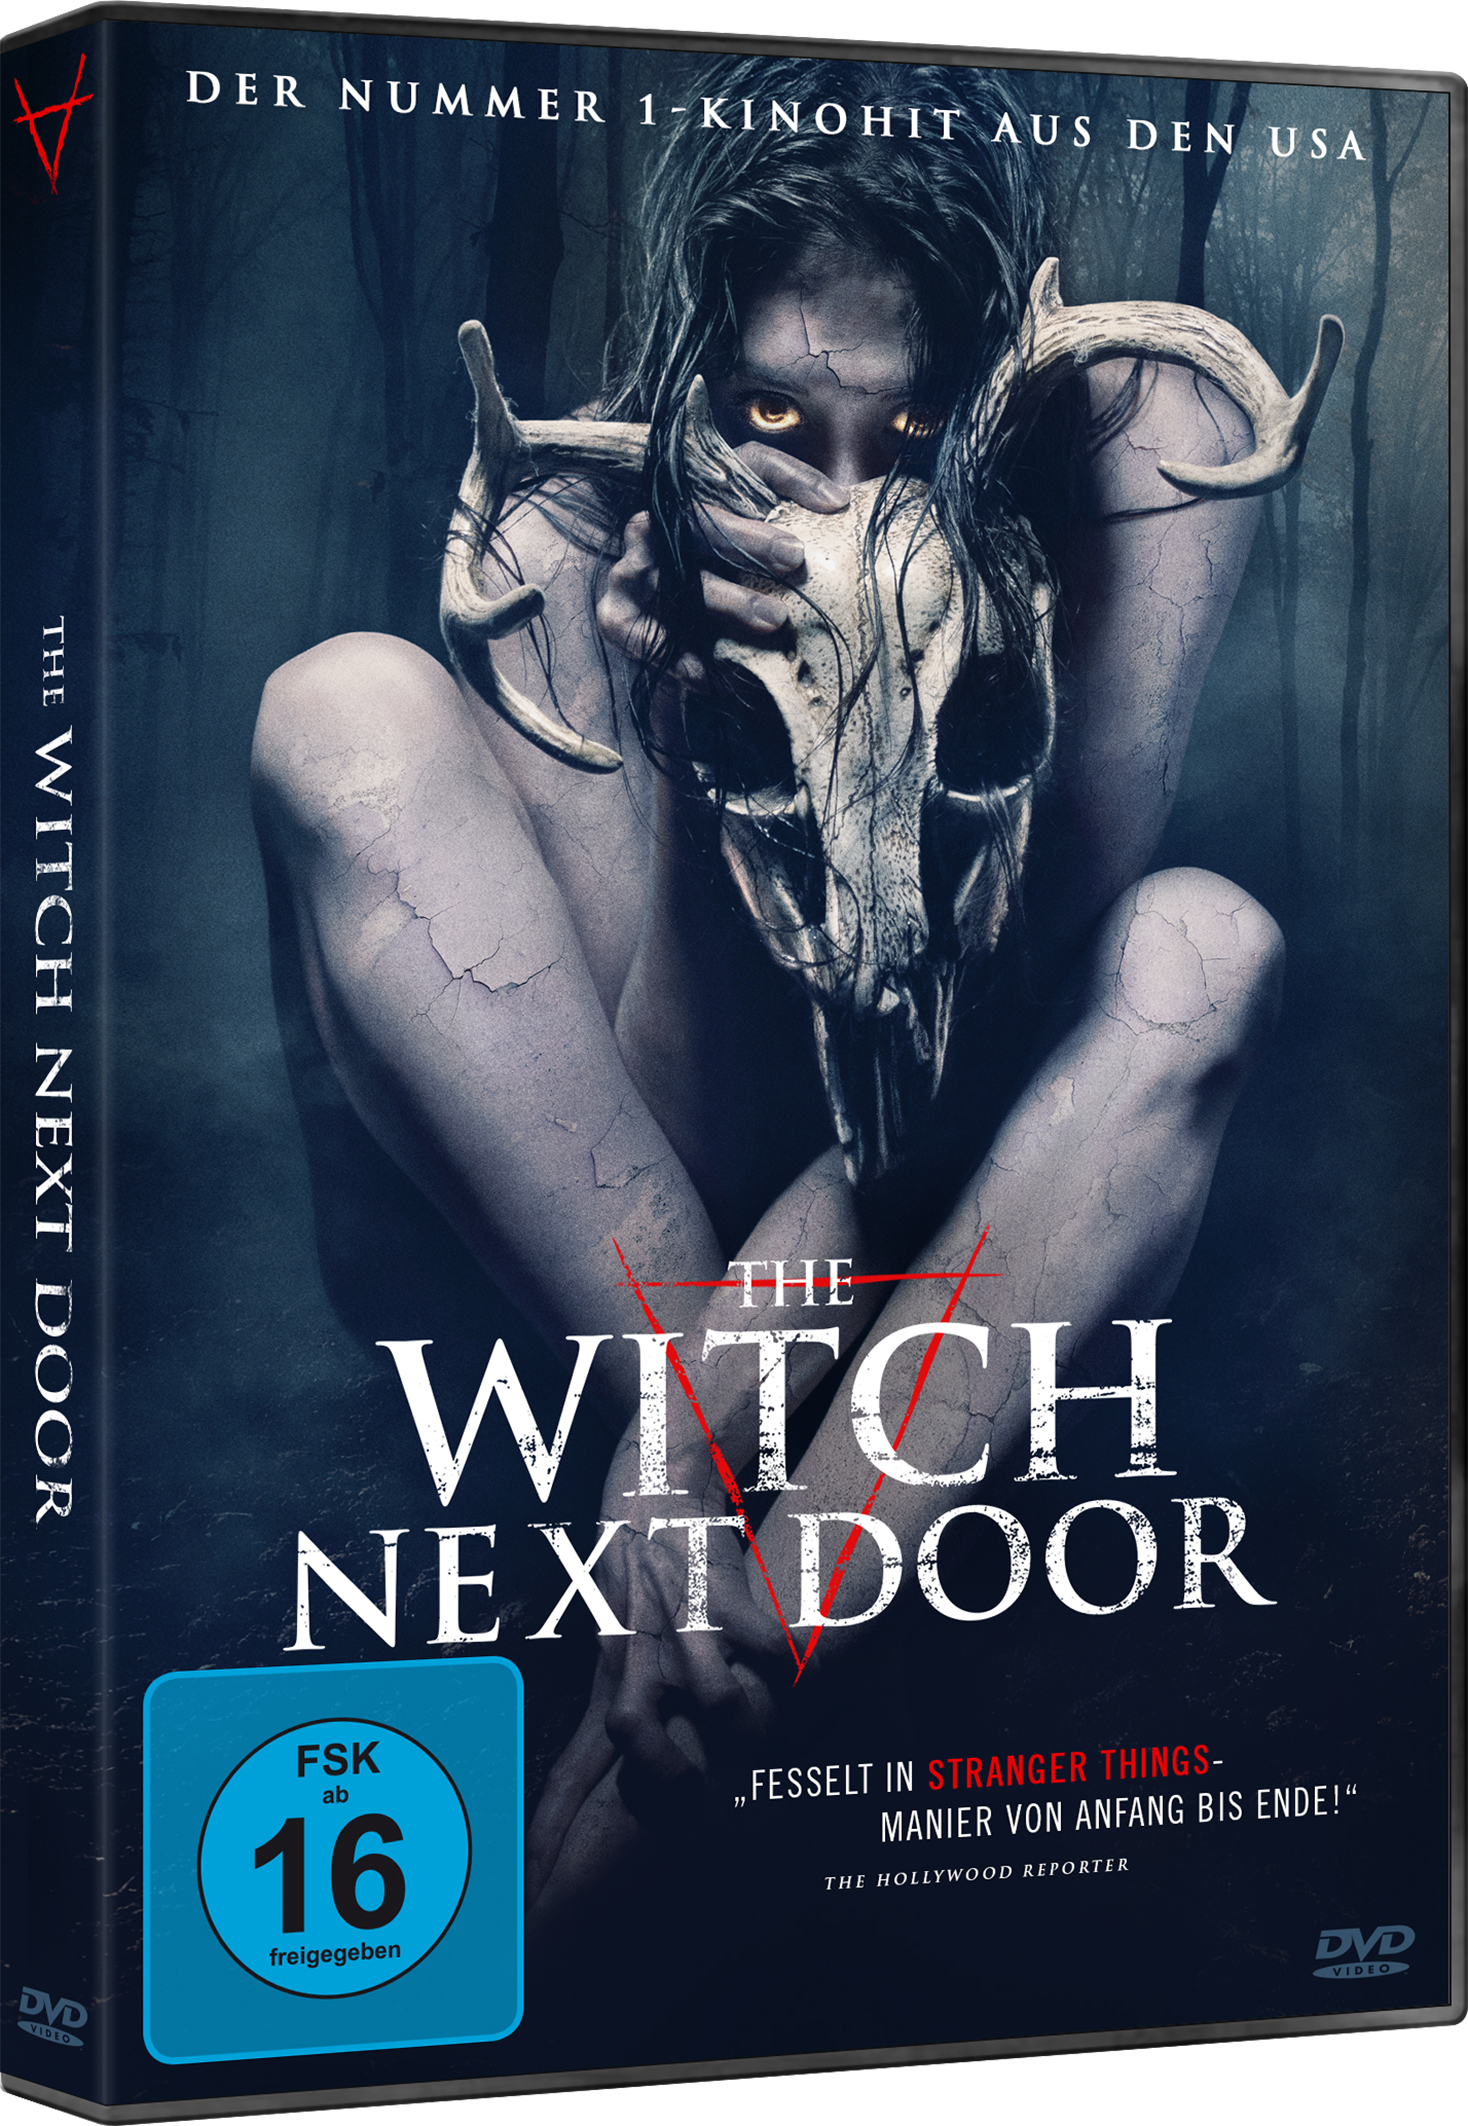 The Witch next Door (DVD)  Image 2